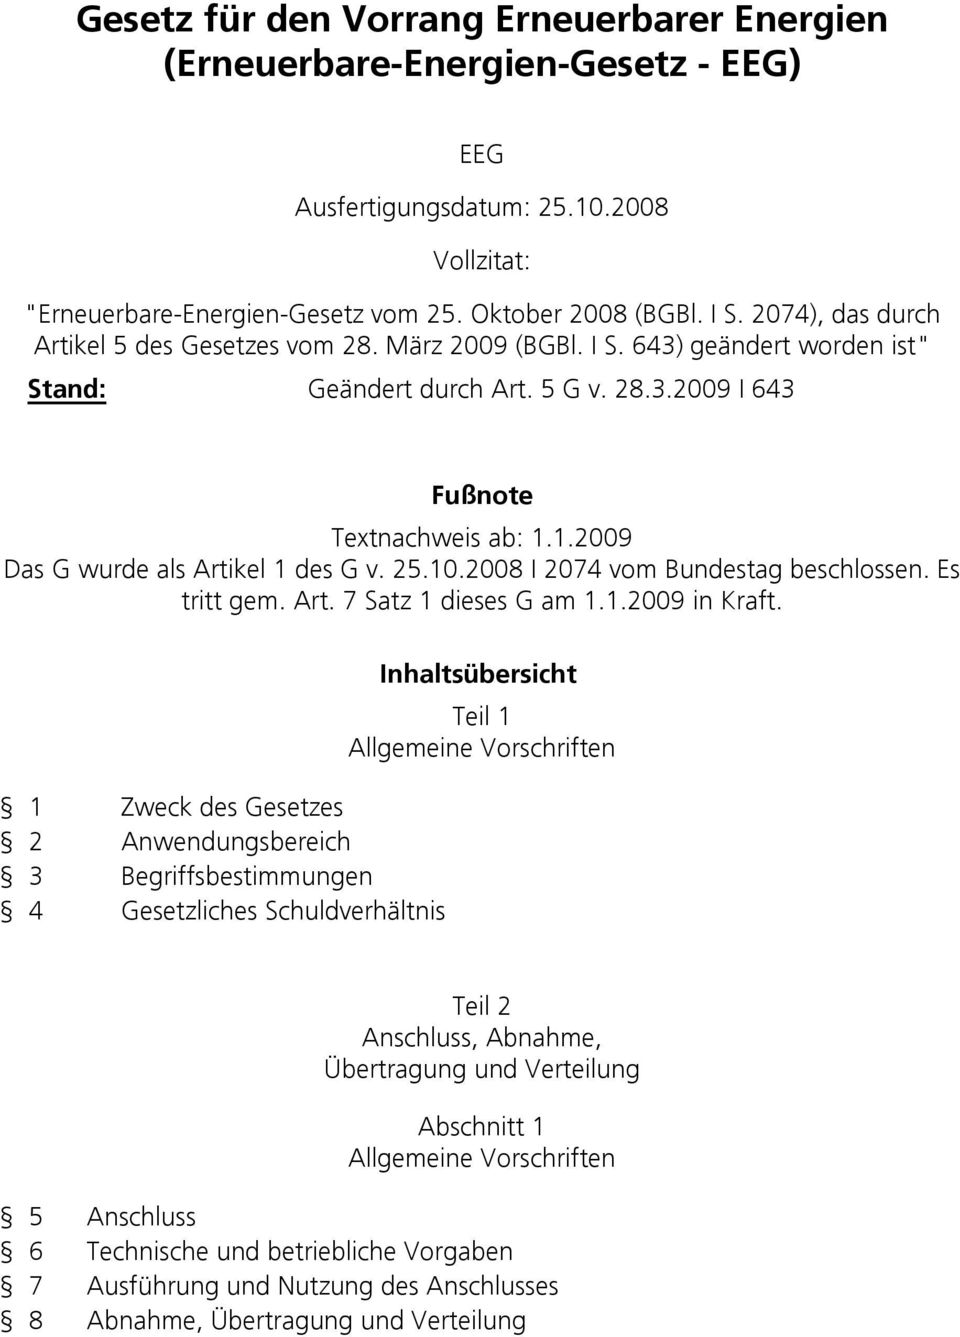 1.2009 Das G wurde als Artikel 1 des G v. 25.10.2008 I 2074 vom Bundestag beschlossen. Es tritt gem. Art. 7 Satz 1 dieses G am 1.1.2009 in Kraft.